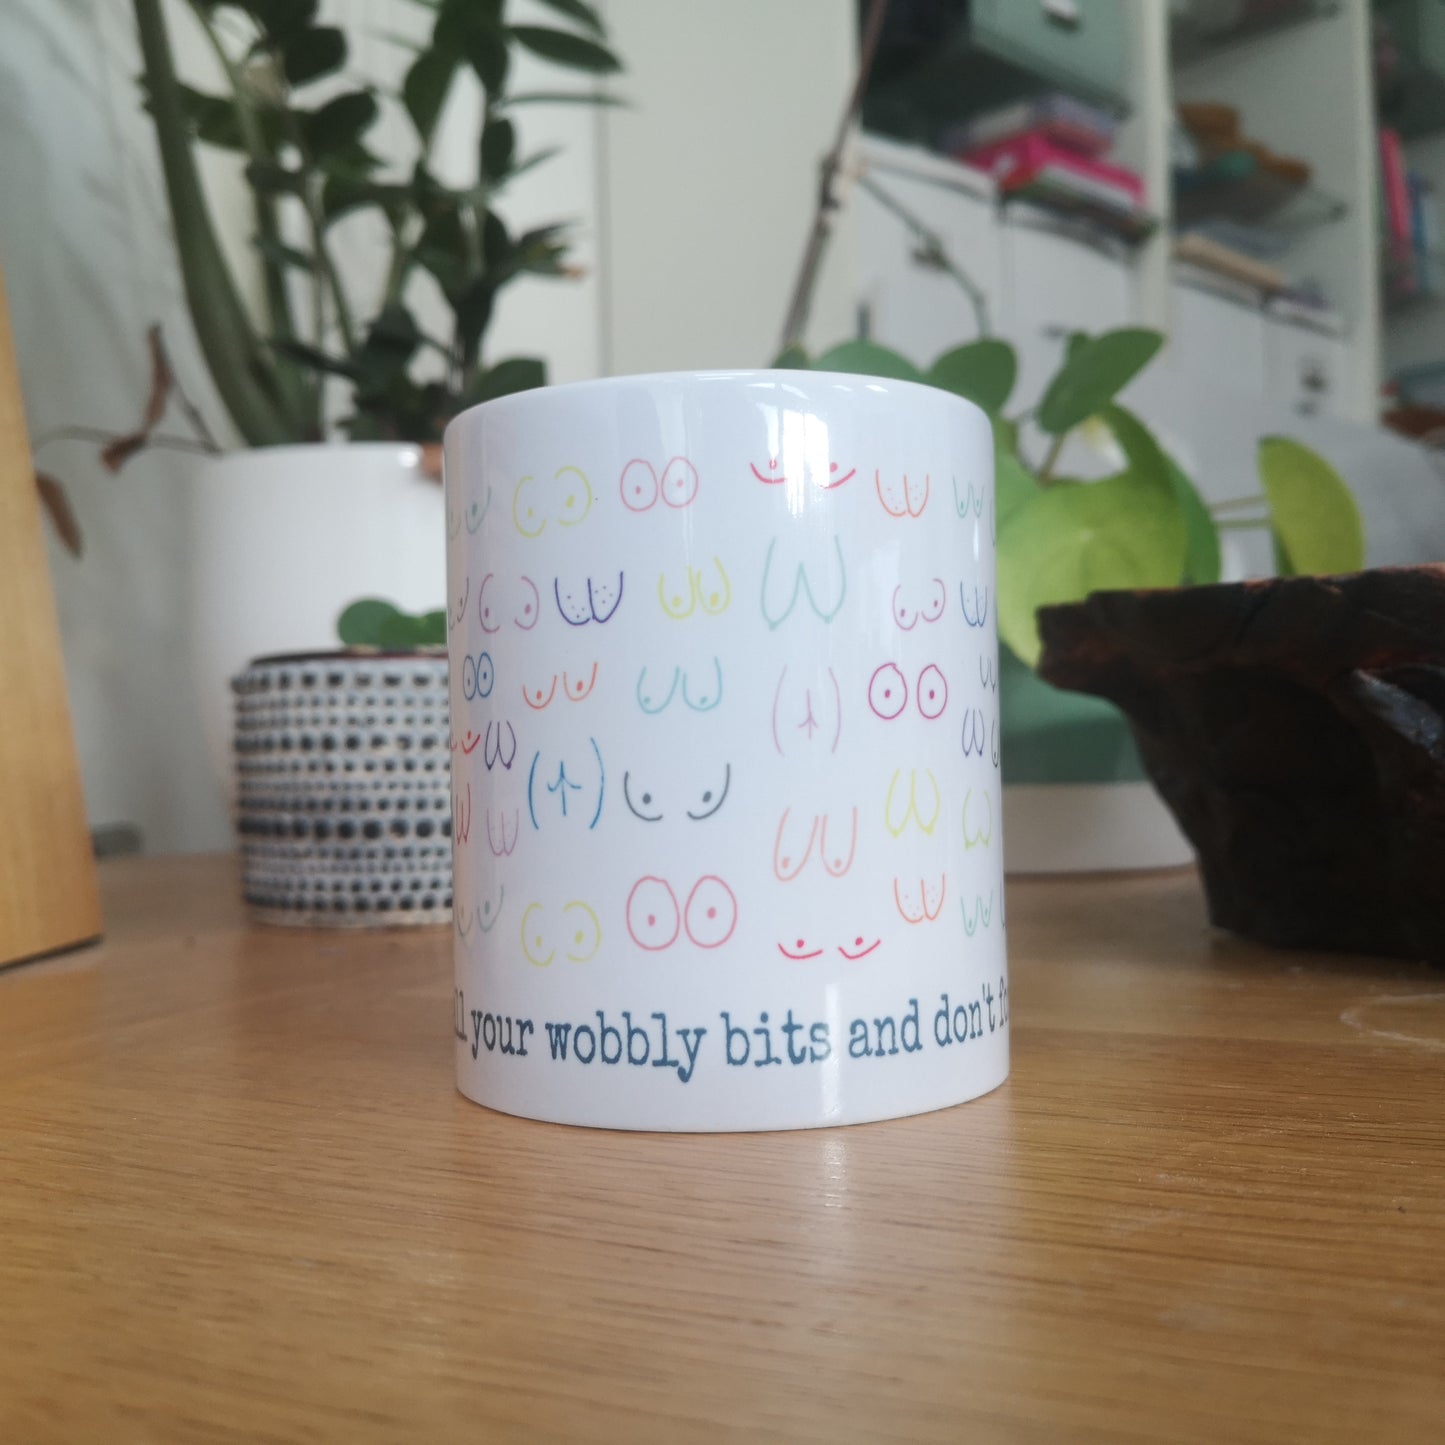 MAKE SURE TO DRY YOUR WOBBLY BITS Ceramic Mug